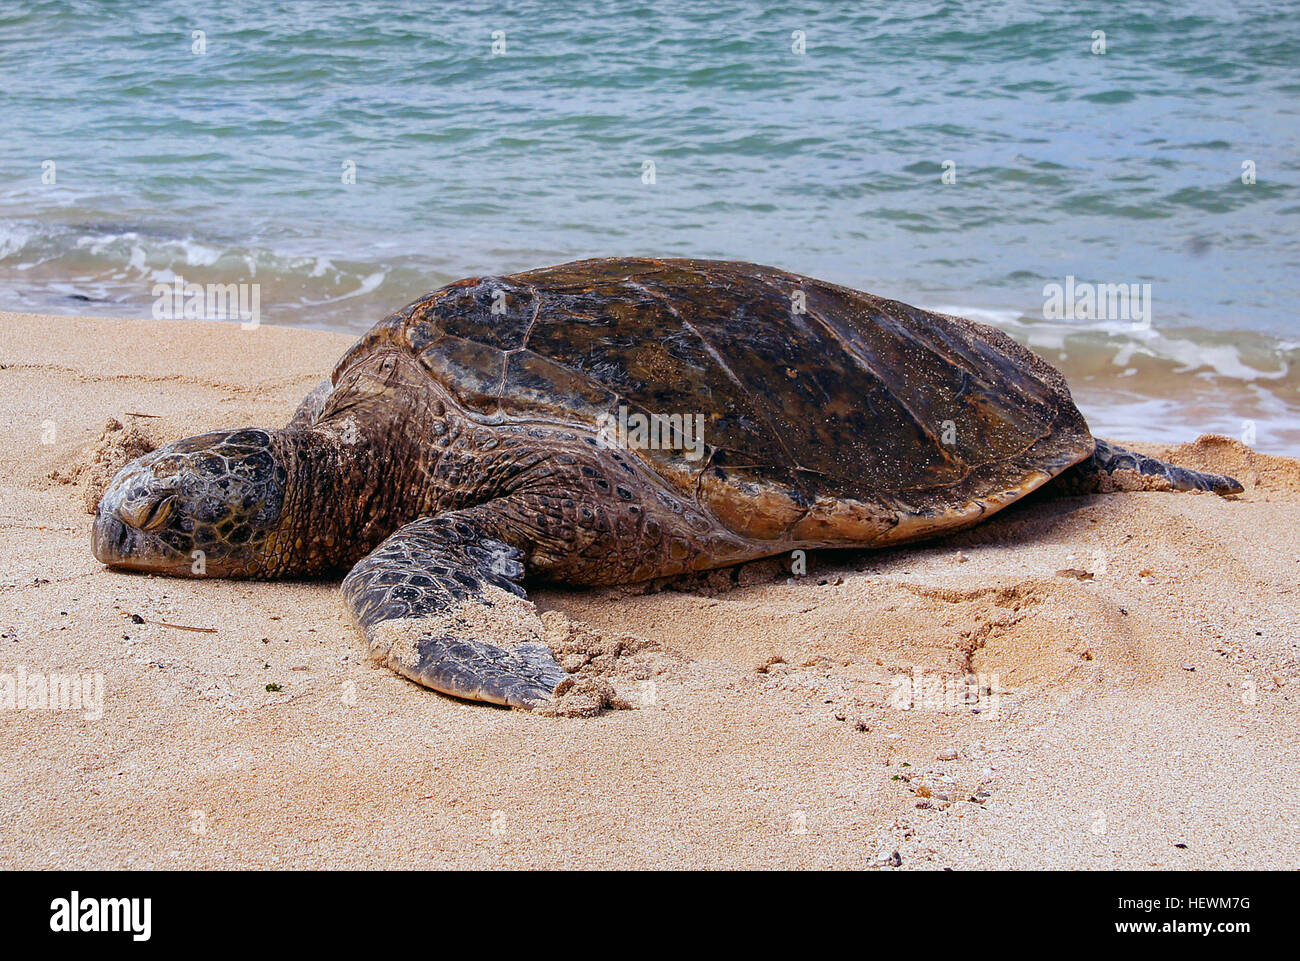 Las tortugas de mar los dos tipos de tortugas marinas más frecuentemente observado en Hawaii son la tortuga verde y la tortuga carey. Otras tres especies pueden ocurrir, pero son muy pocas veces visto en nuestras aguas costeras. La tortuga de mar verde aparece como una especie amenazada en virtud de la legislación federal y estatal. Las tortugas marinas verdes de Hawai han demostrado una buena recuperación de la población en los últimos años, aunque todavía están plagados de un papiloma virus que causa tumores deformantes. Tortugas Carey, catalogada como una especie en peligro de extinción, son avistados mucho menos frecuente que el de los Verdes. Foto de stock